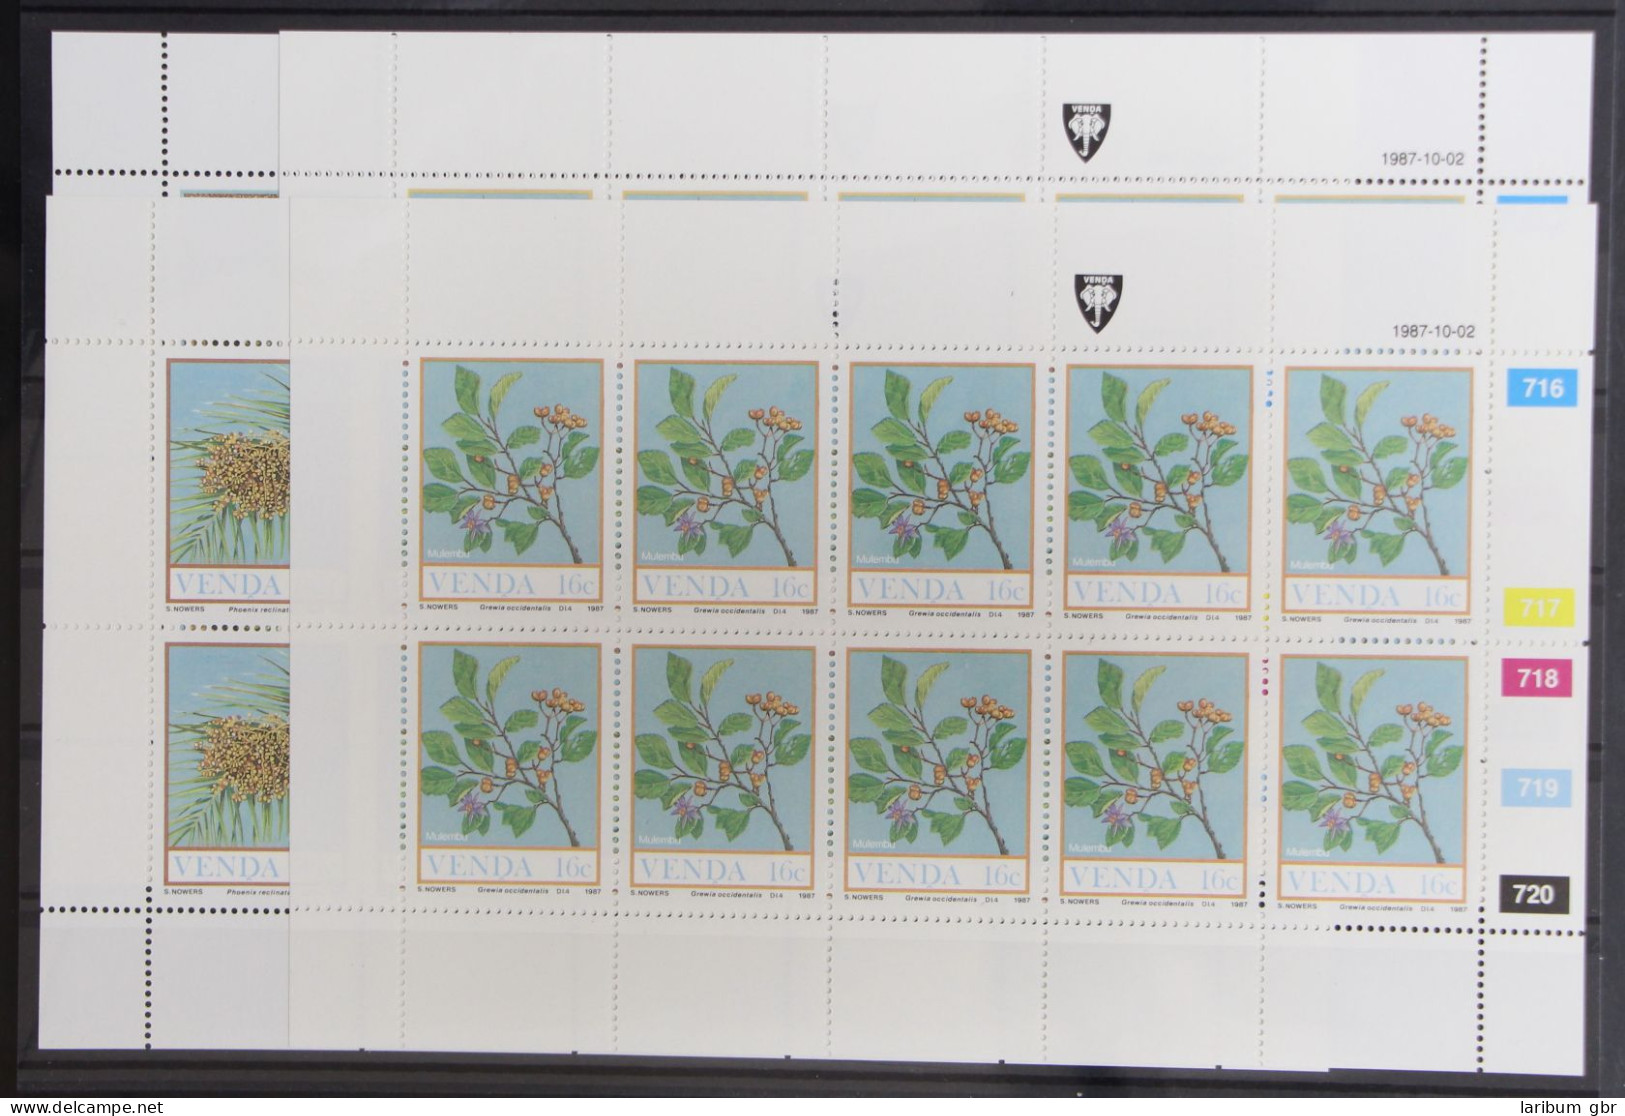 Venda 163-166 Postfrisch Kleinbogensatz / Natur #GG973 - Venda